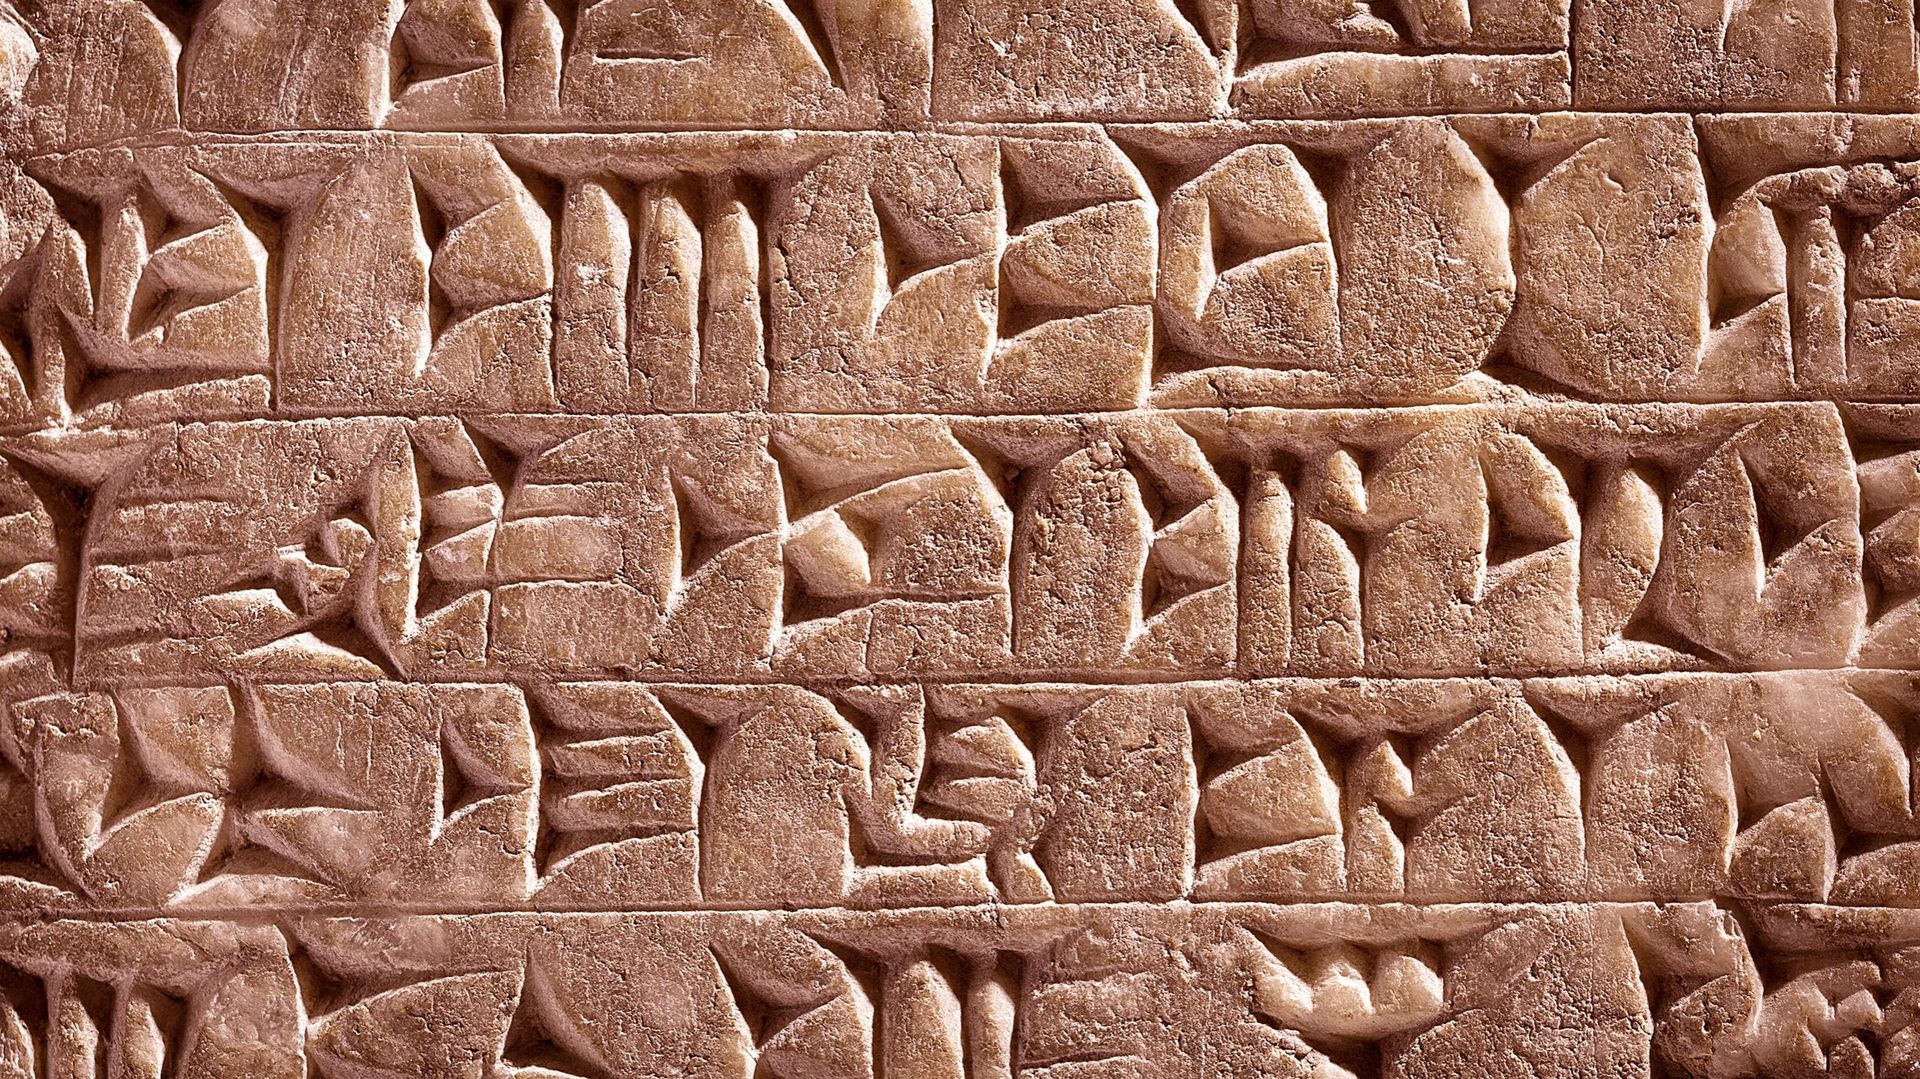 À l’image des tout premiers codes de comptages utilisés par les Assyriens et les Sumériens en Mésopotamie, il faut une clé de décryptage pour accéder aux données cryptographiées.